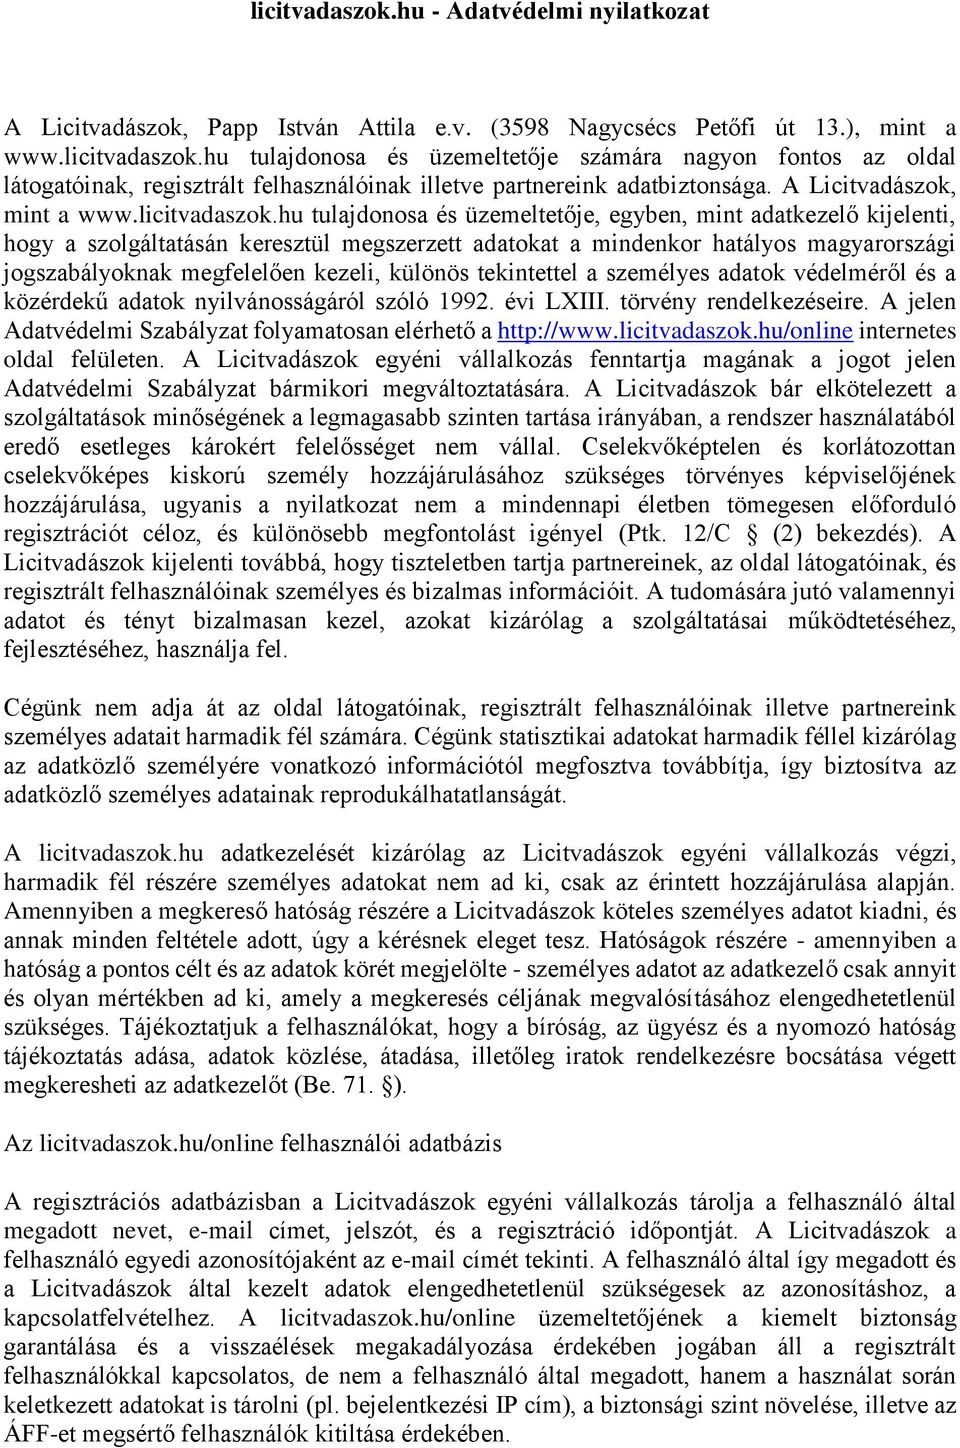 hu tulajdonosa és üzemeltetője, egyben, mint adatkezelő kijelenti, hogy a szolgáltatásán keresztül megszerzett adatokat a mindenkor hatályos magyarországi jogszabályoknak megfelelően kezeli, különös